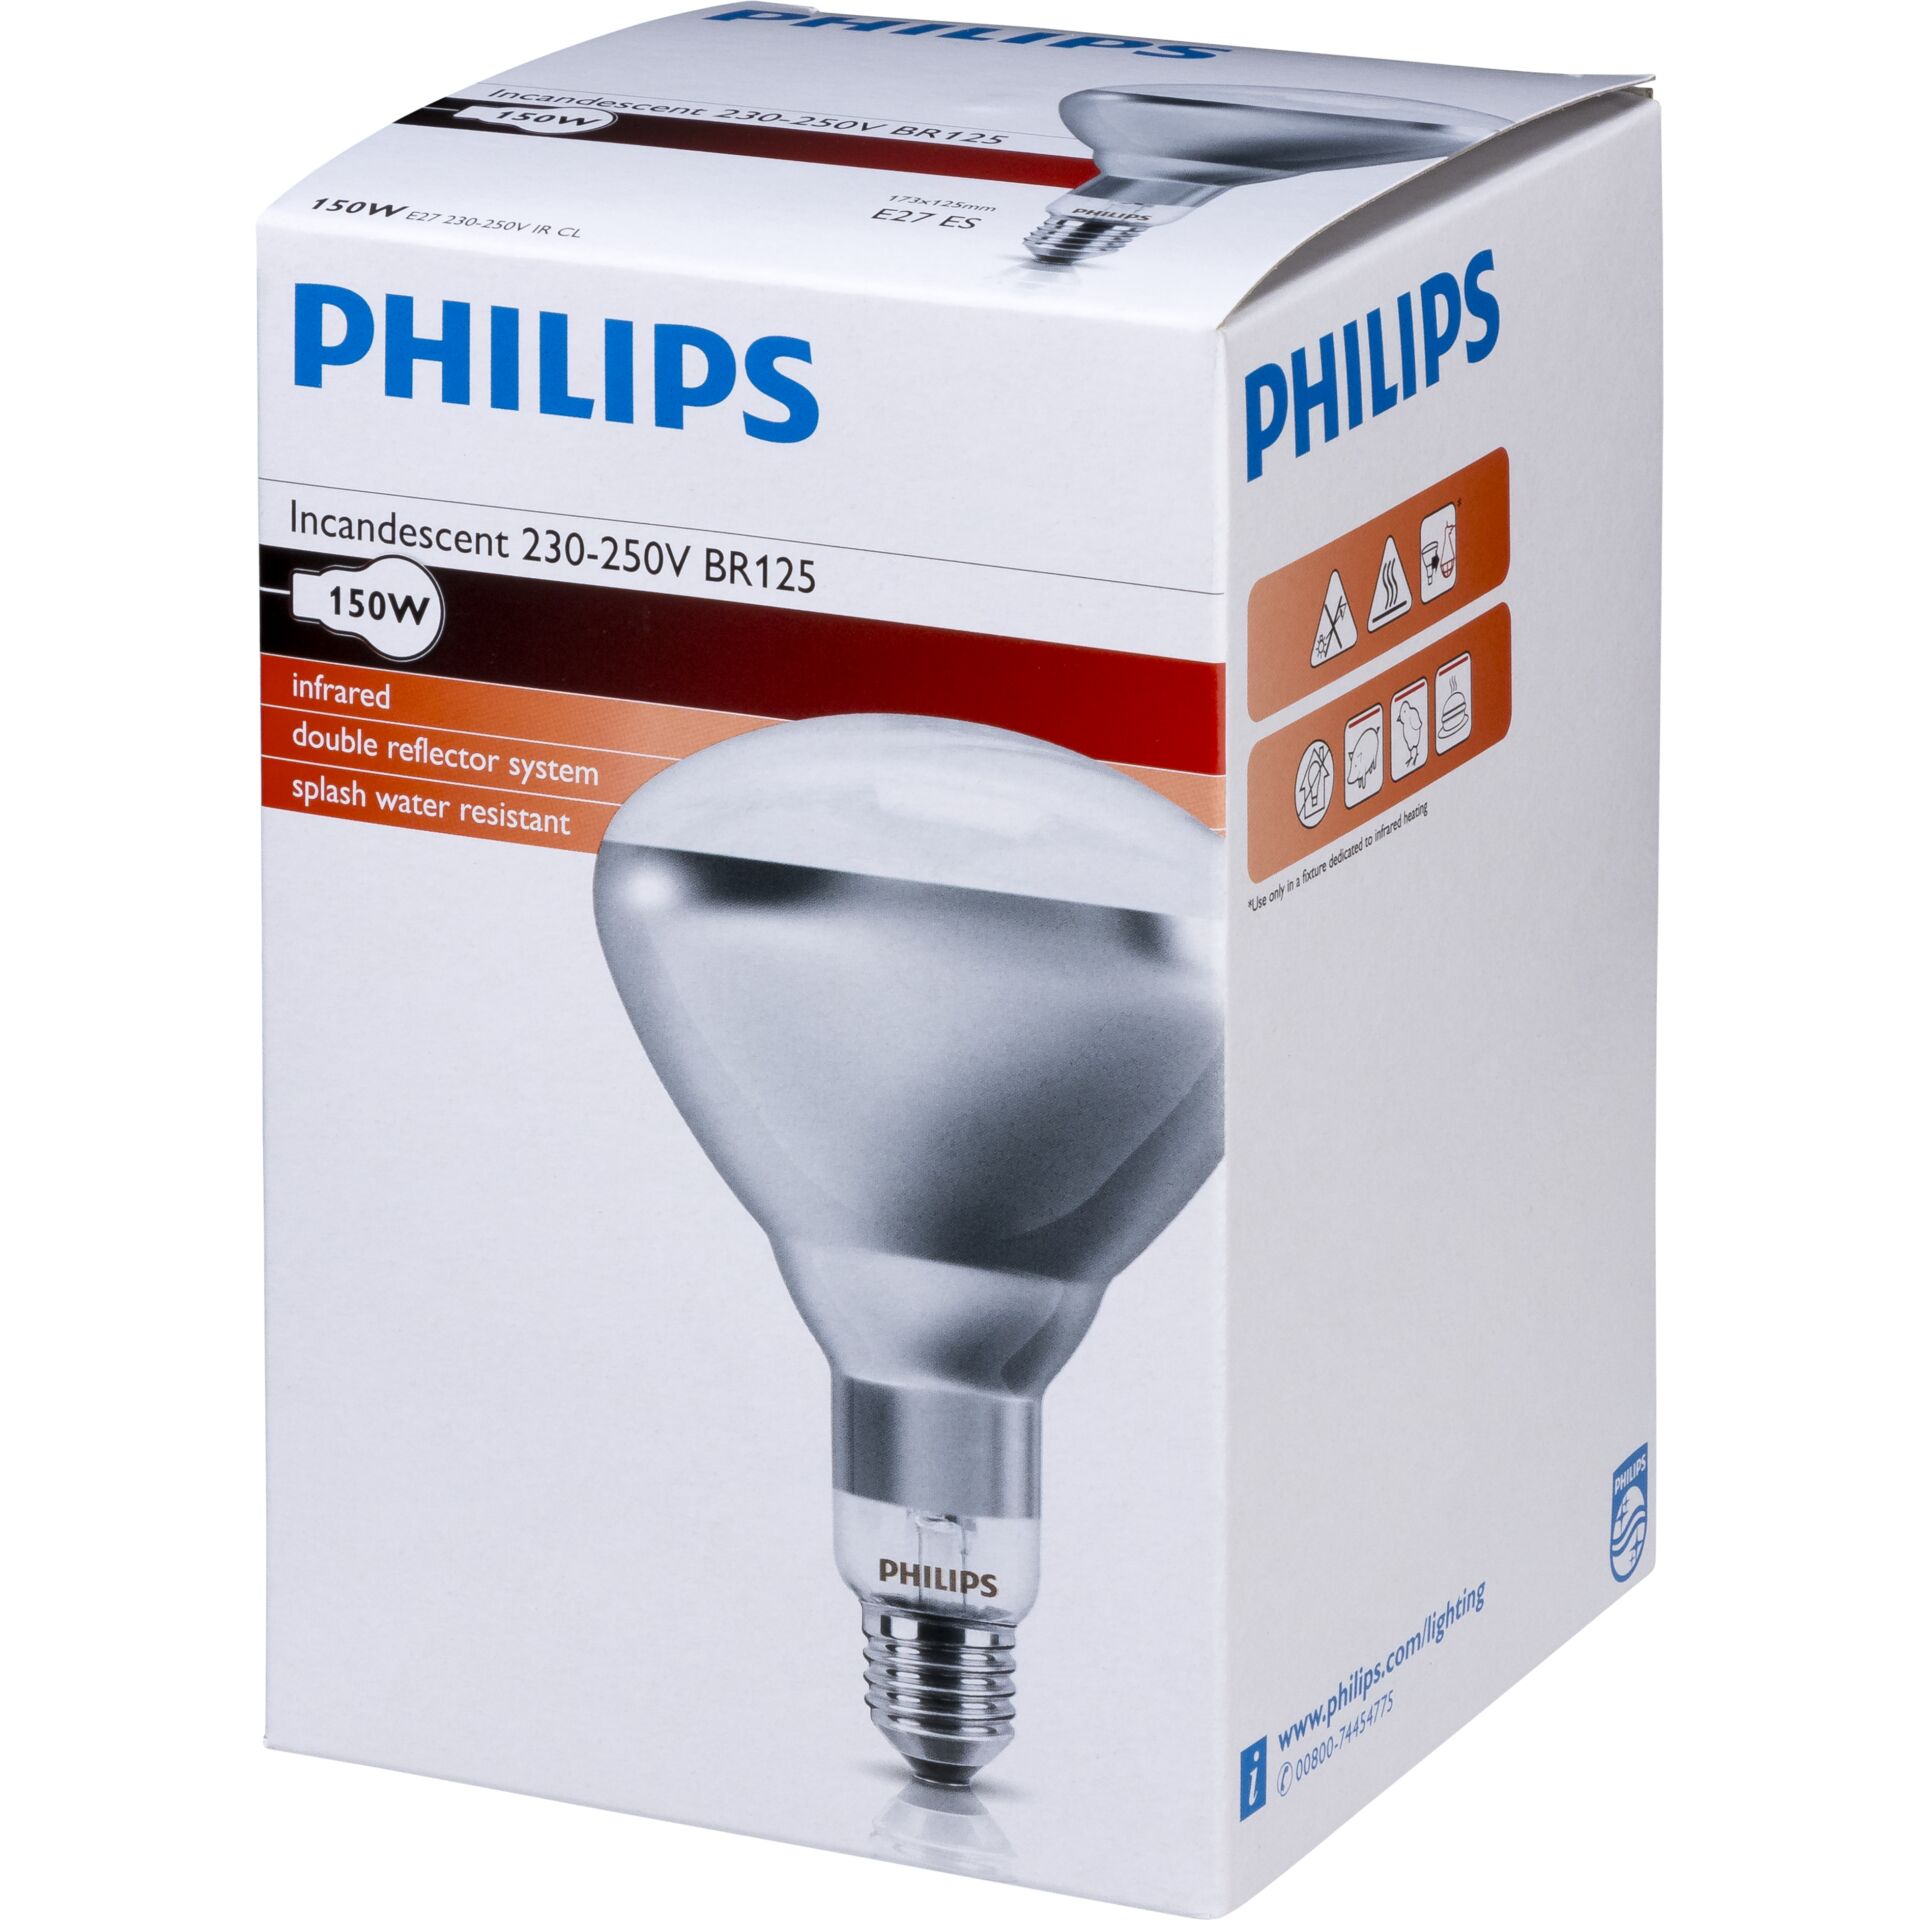 Philips lampada infrar. BR125 IR 150W E27 230-250V CL